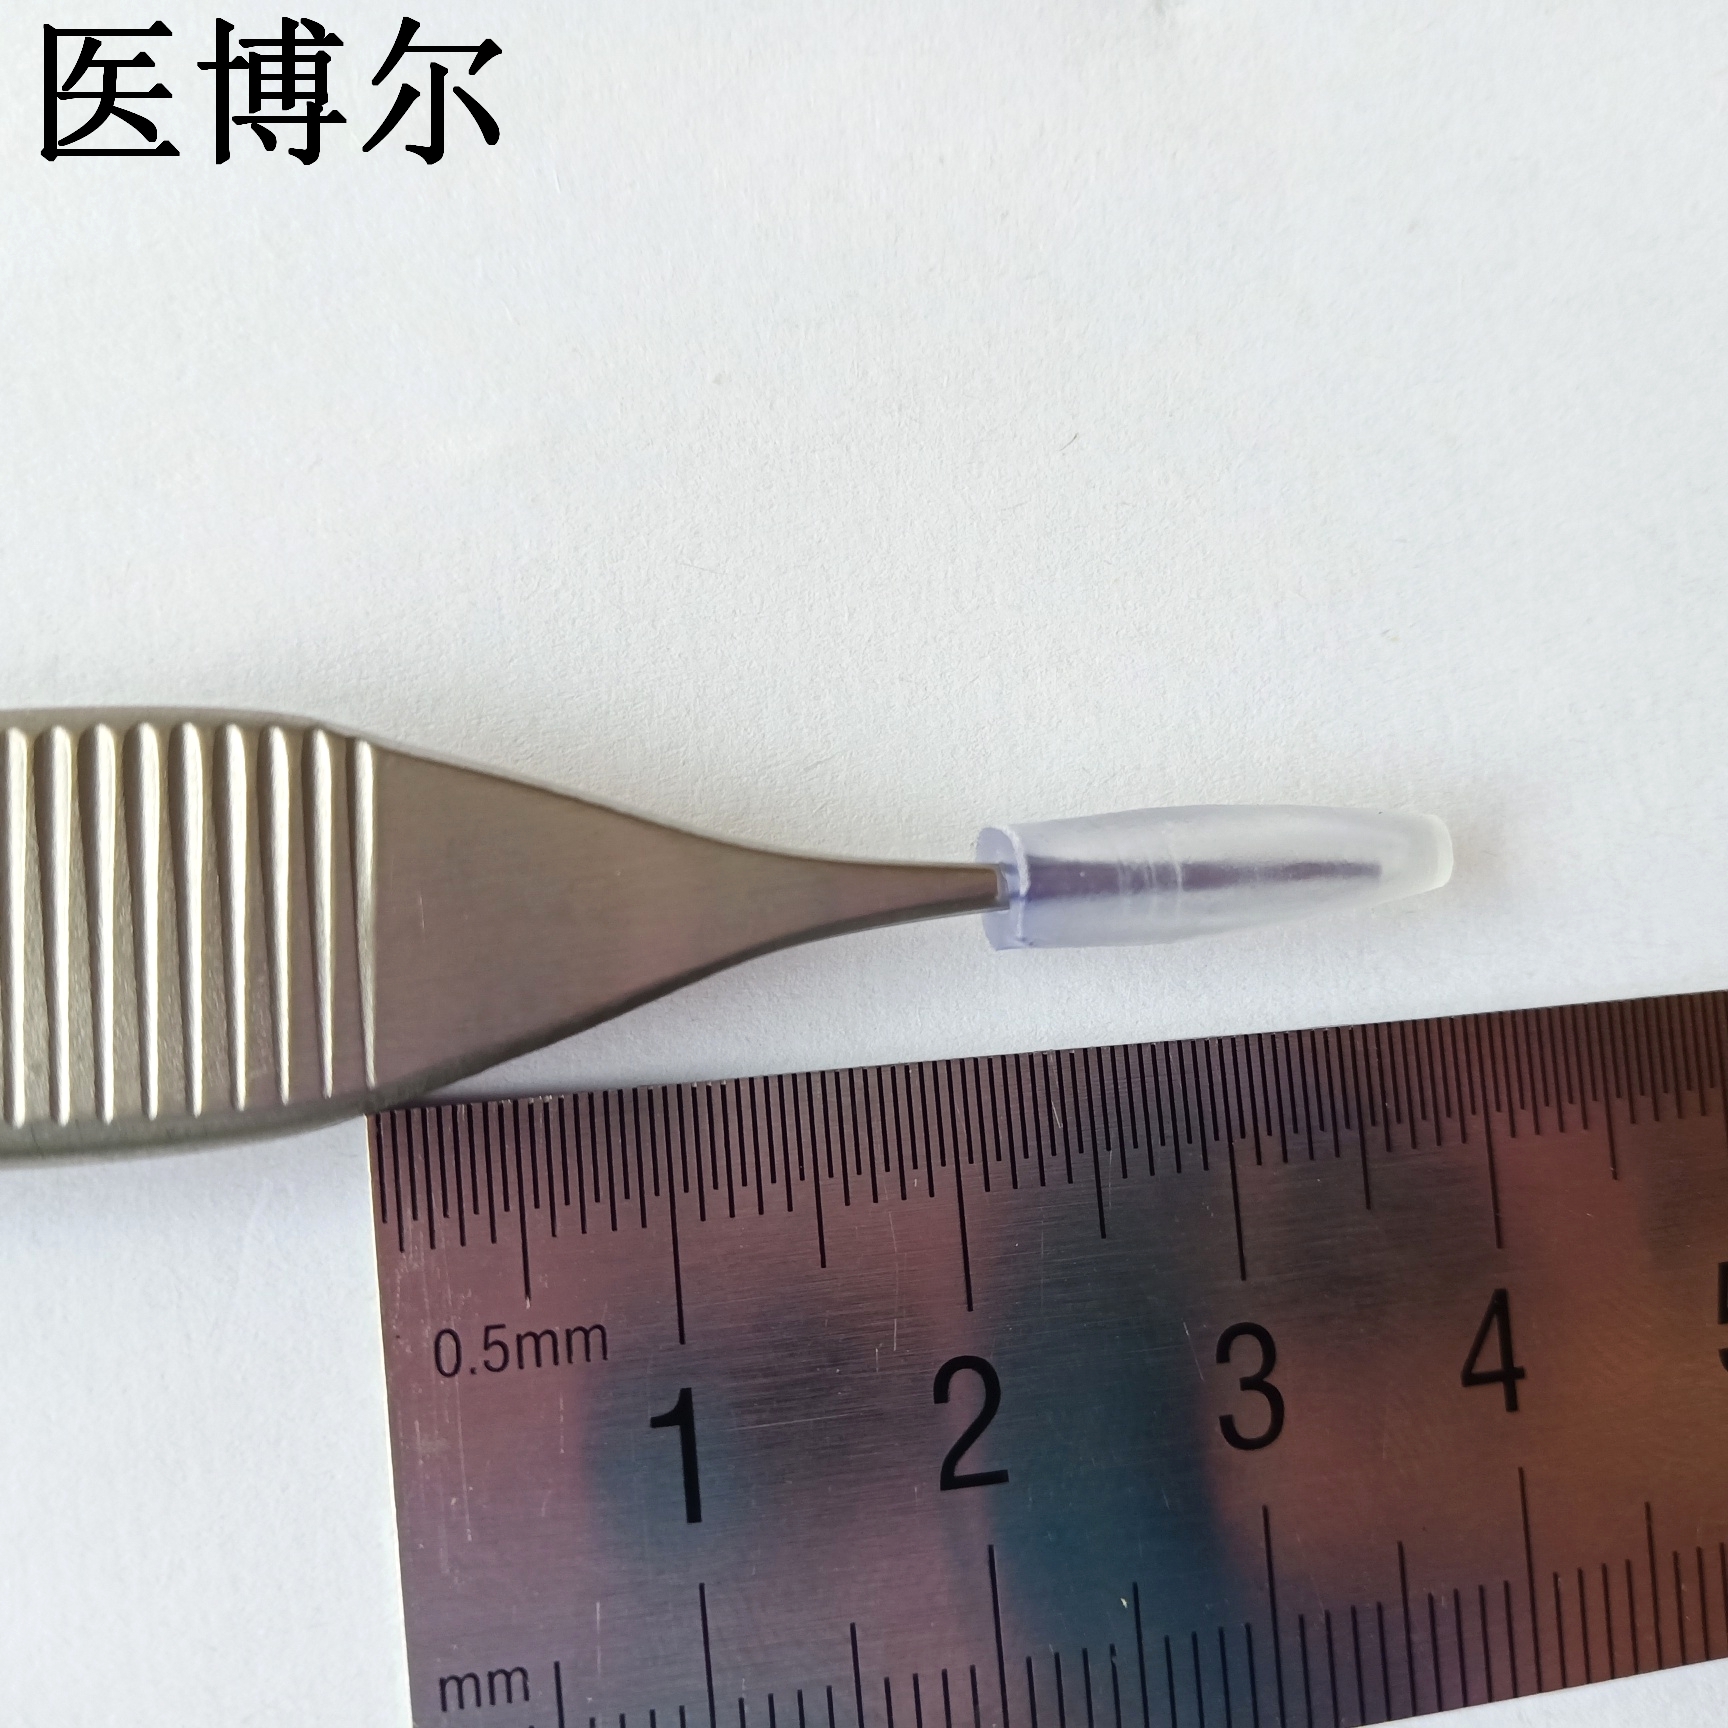 14cm整形镊0 (2)_看图王.jpg